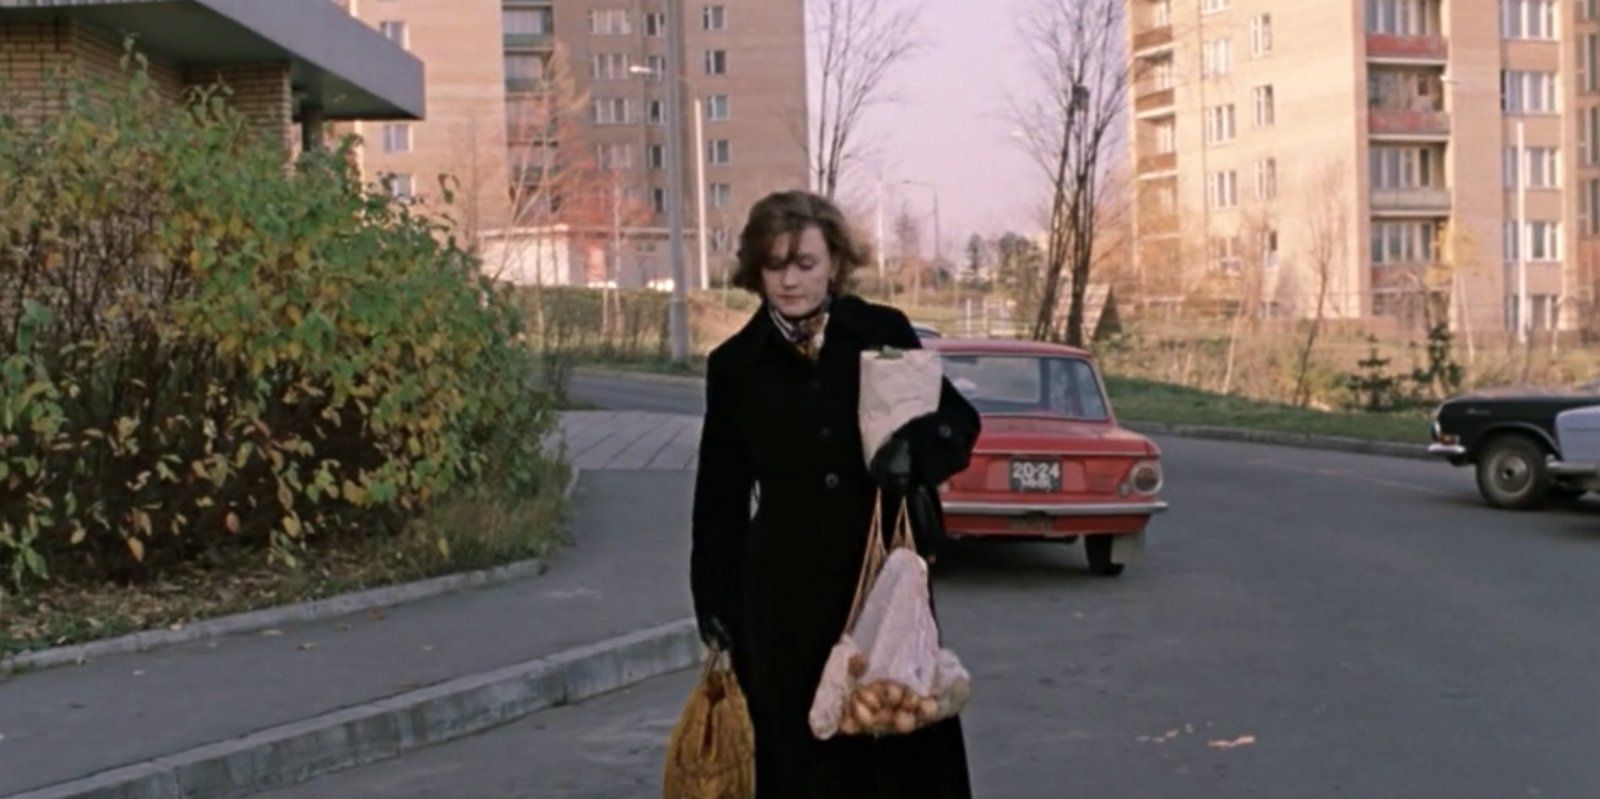 Кадр из фильма «Москва слезам не верит». Режиссер В. Меньшов. 1979 год